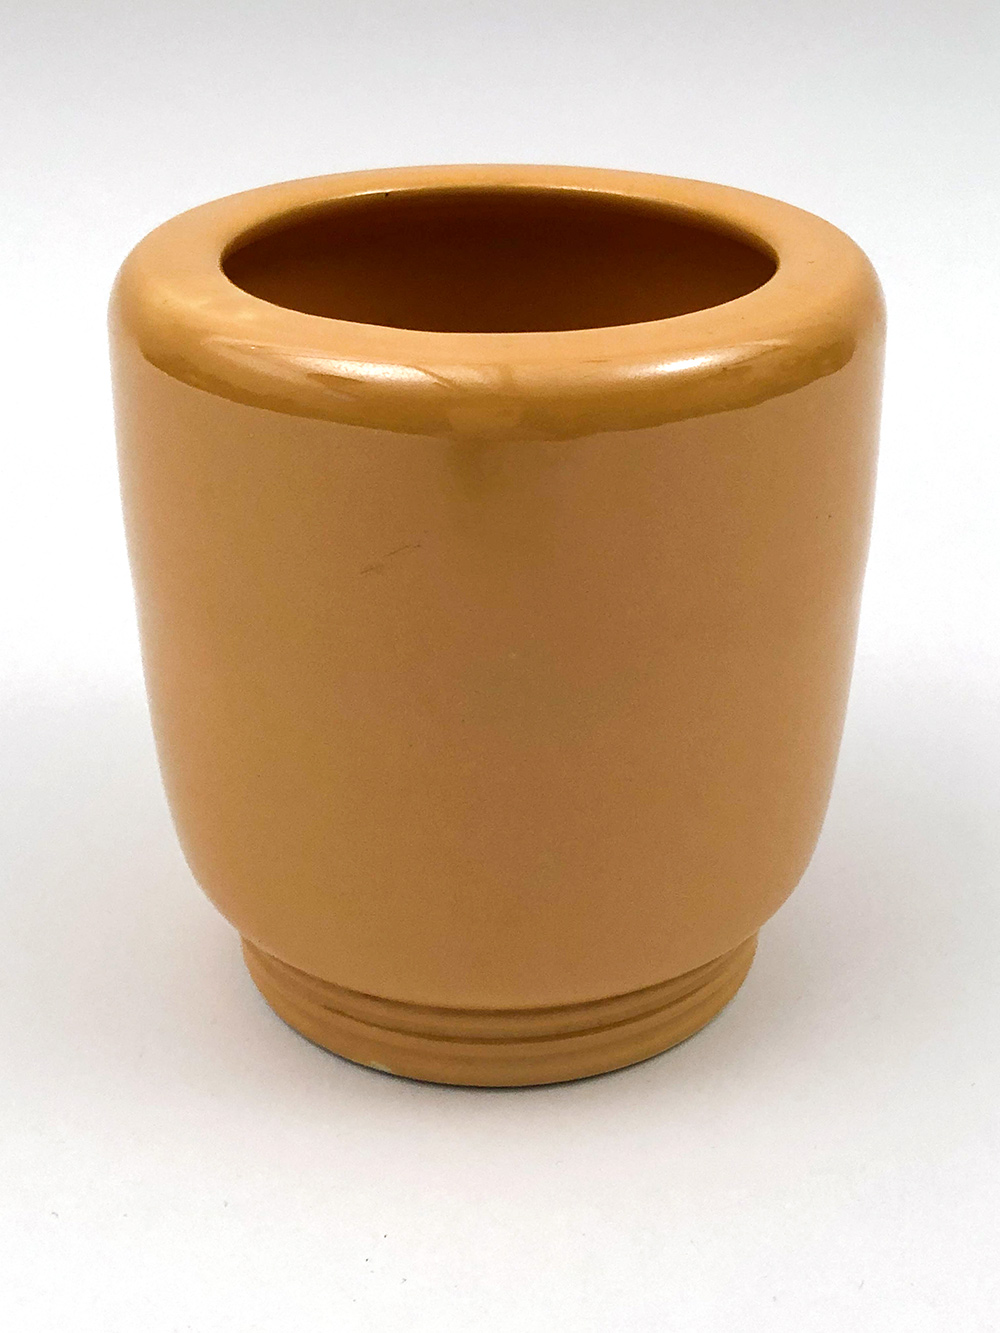 new york worlds fair pottery vase